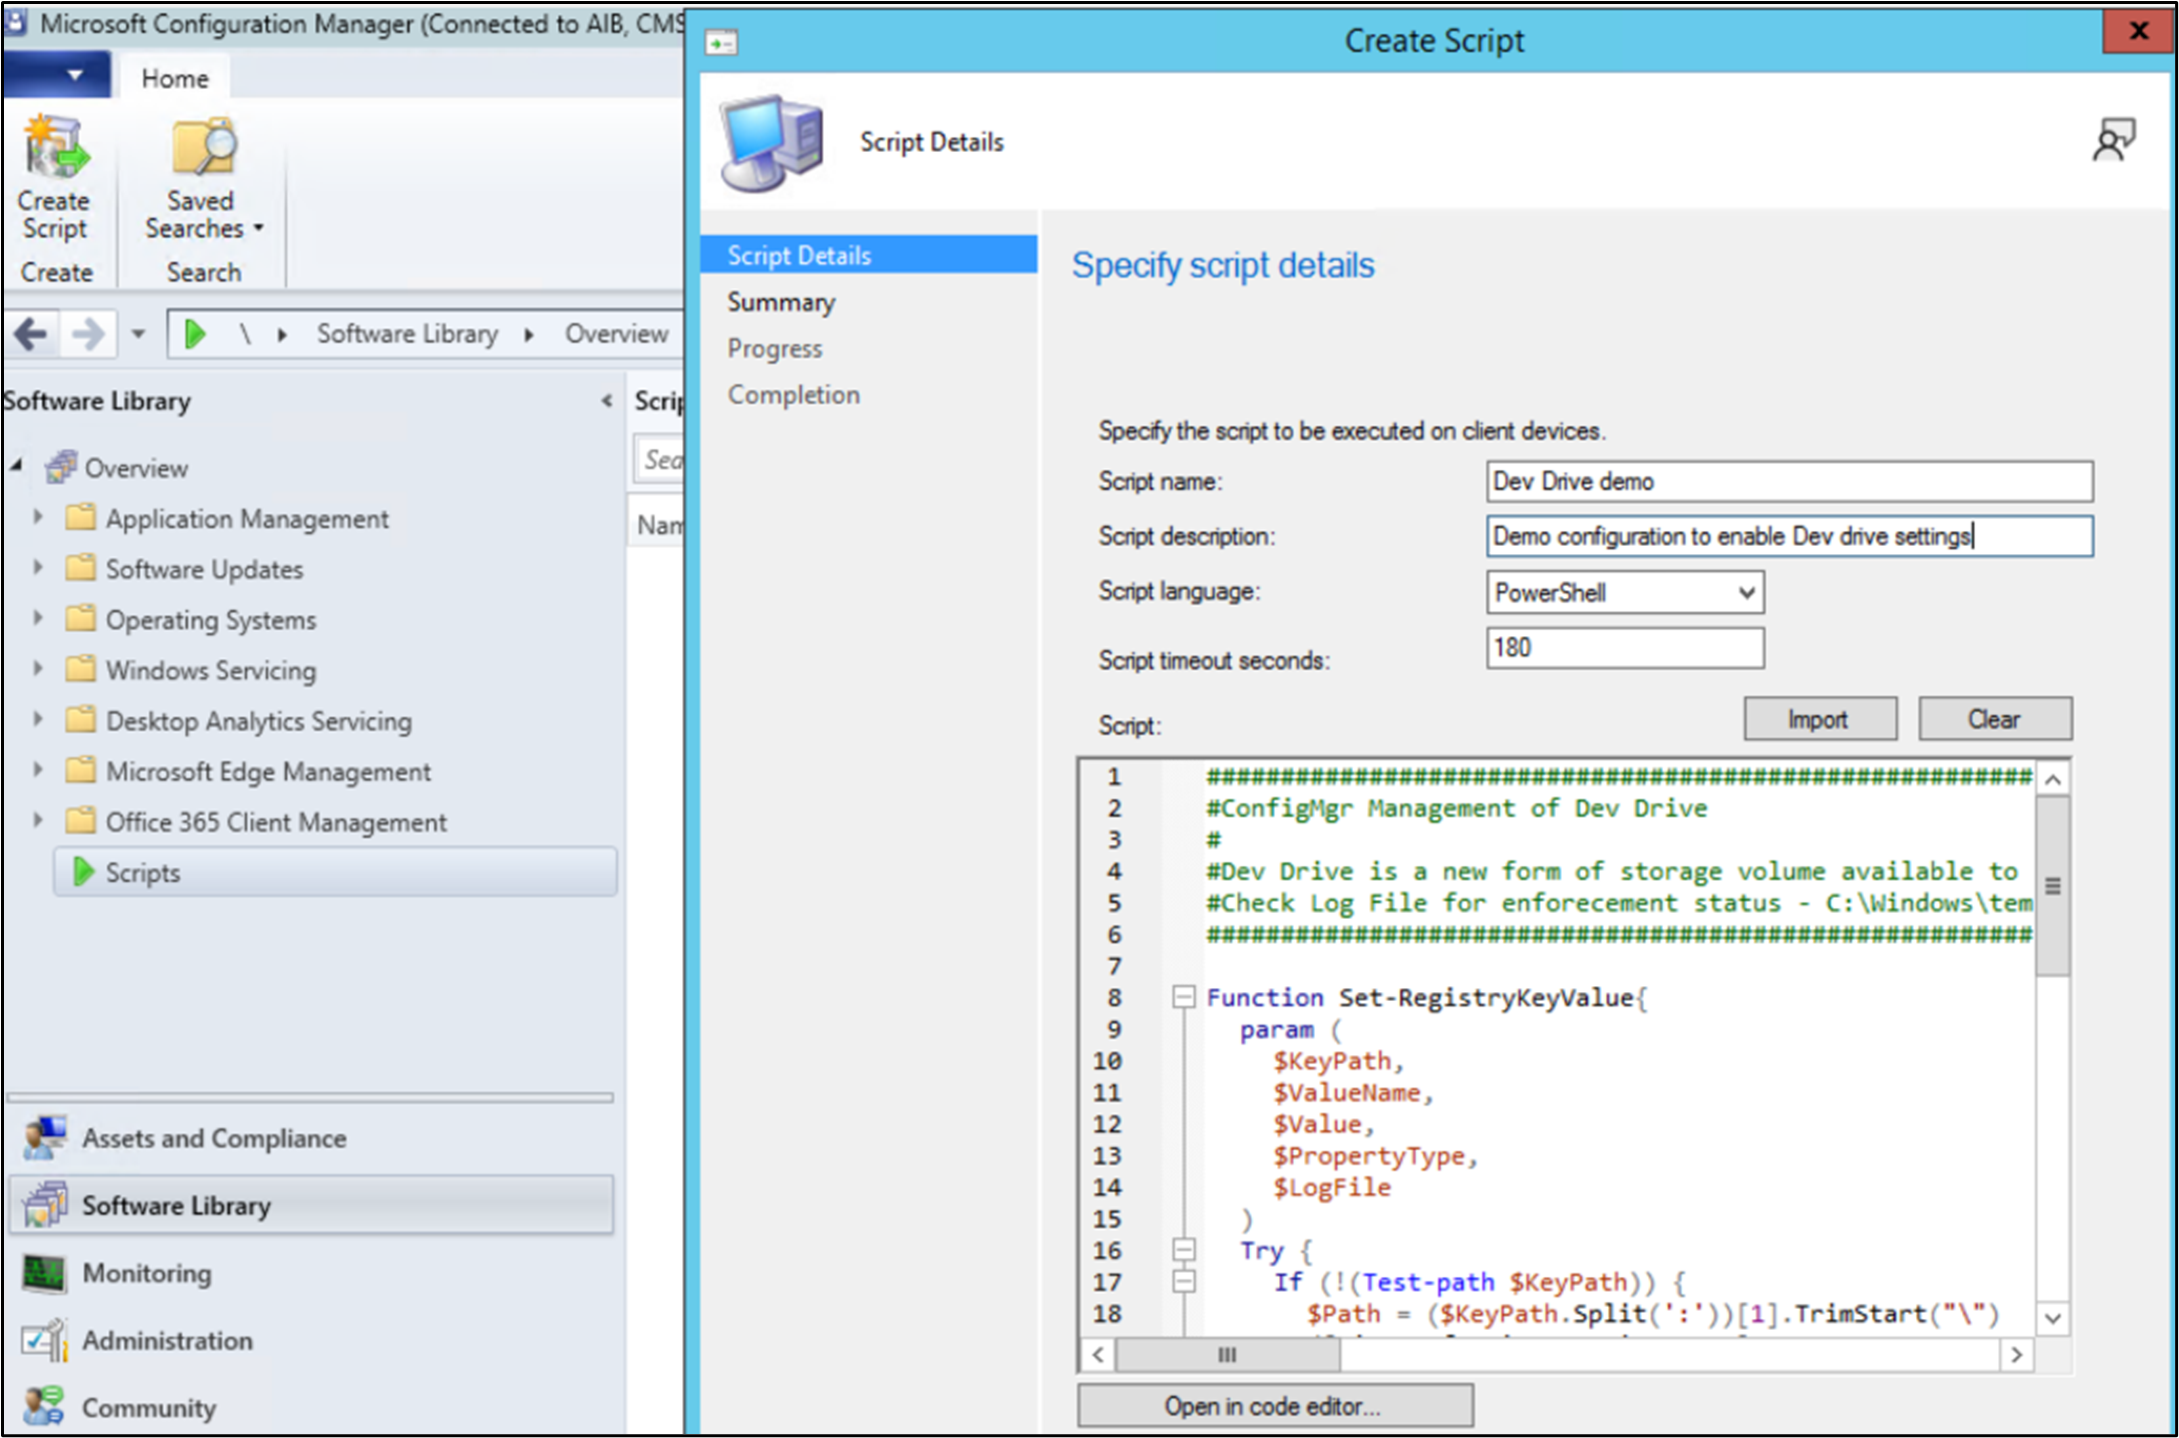 Capture d’écran de la fenêtre Créer un script de Microsoft Configuration Manager affichant des détails tels que le nom du script, la description, la langue, le délai d’attente et le script proprement dit.